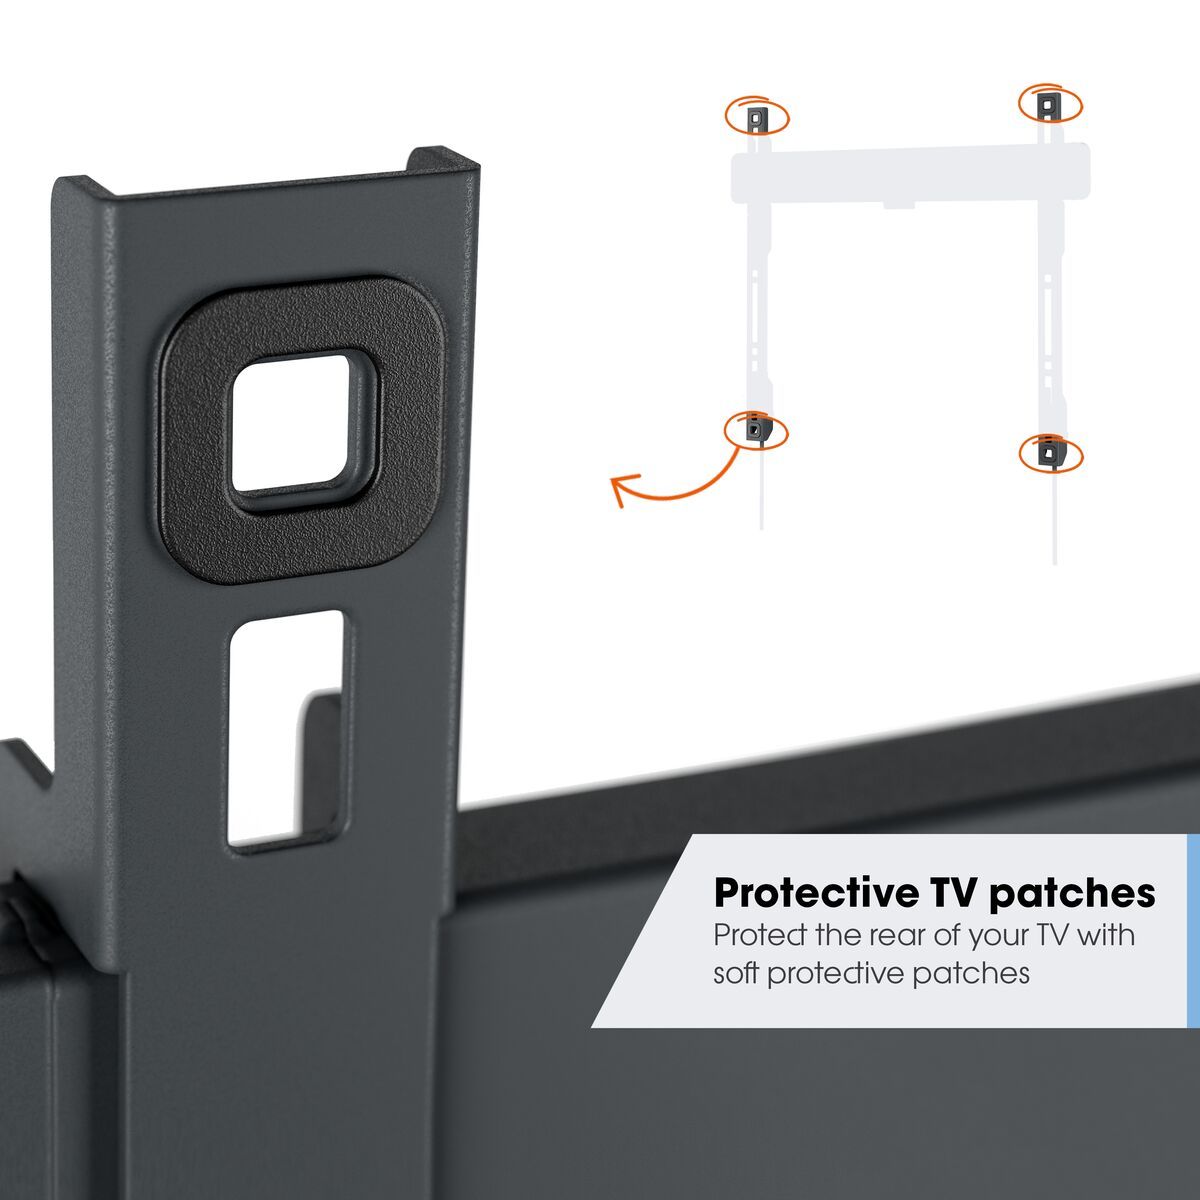 Vogel's TVM 3615 Neigbare TV-Wandhalterung - Geeignet für Fernseher von 40 bis 77 Zoll - Bis zu 20° neigbar - USP